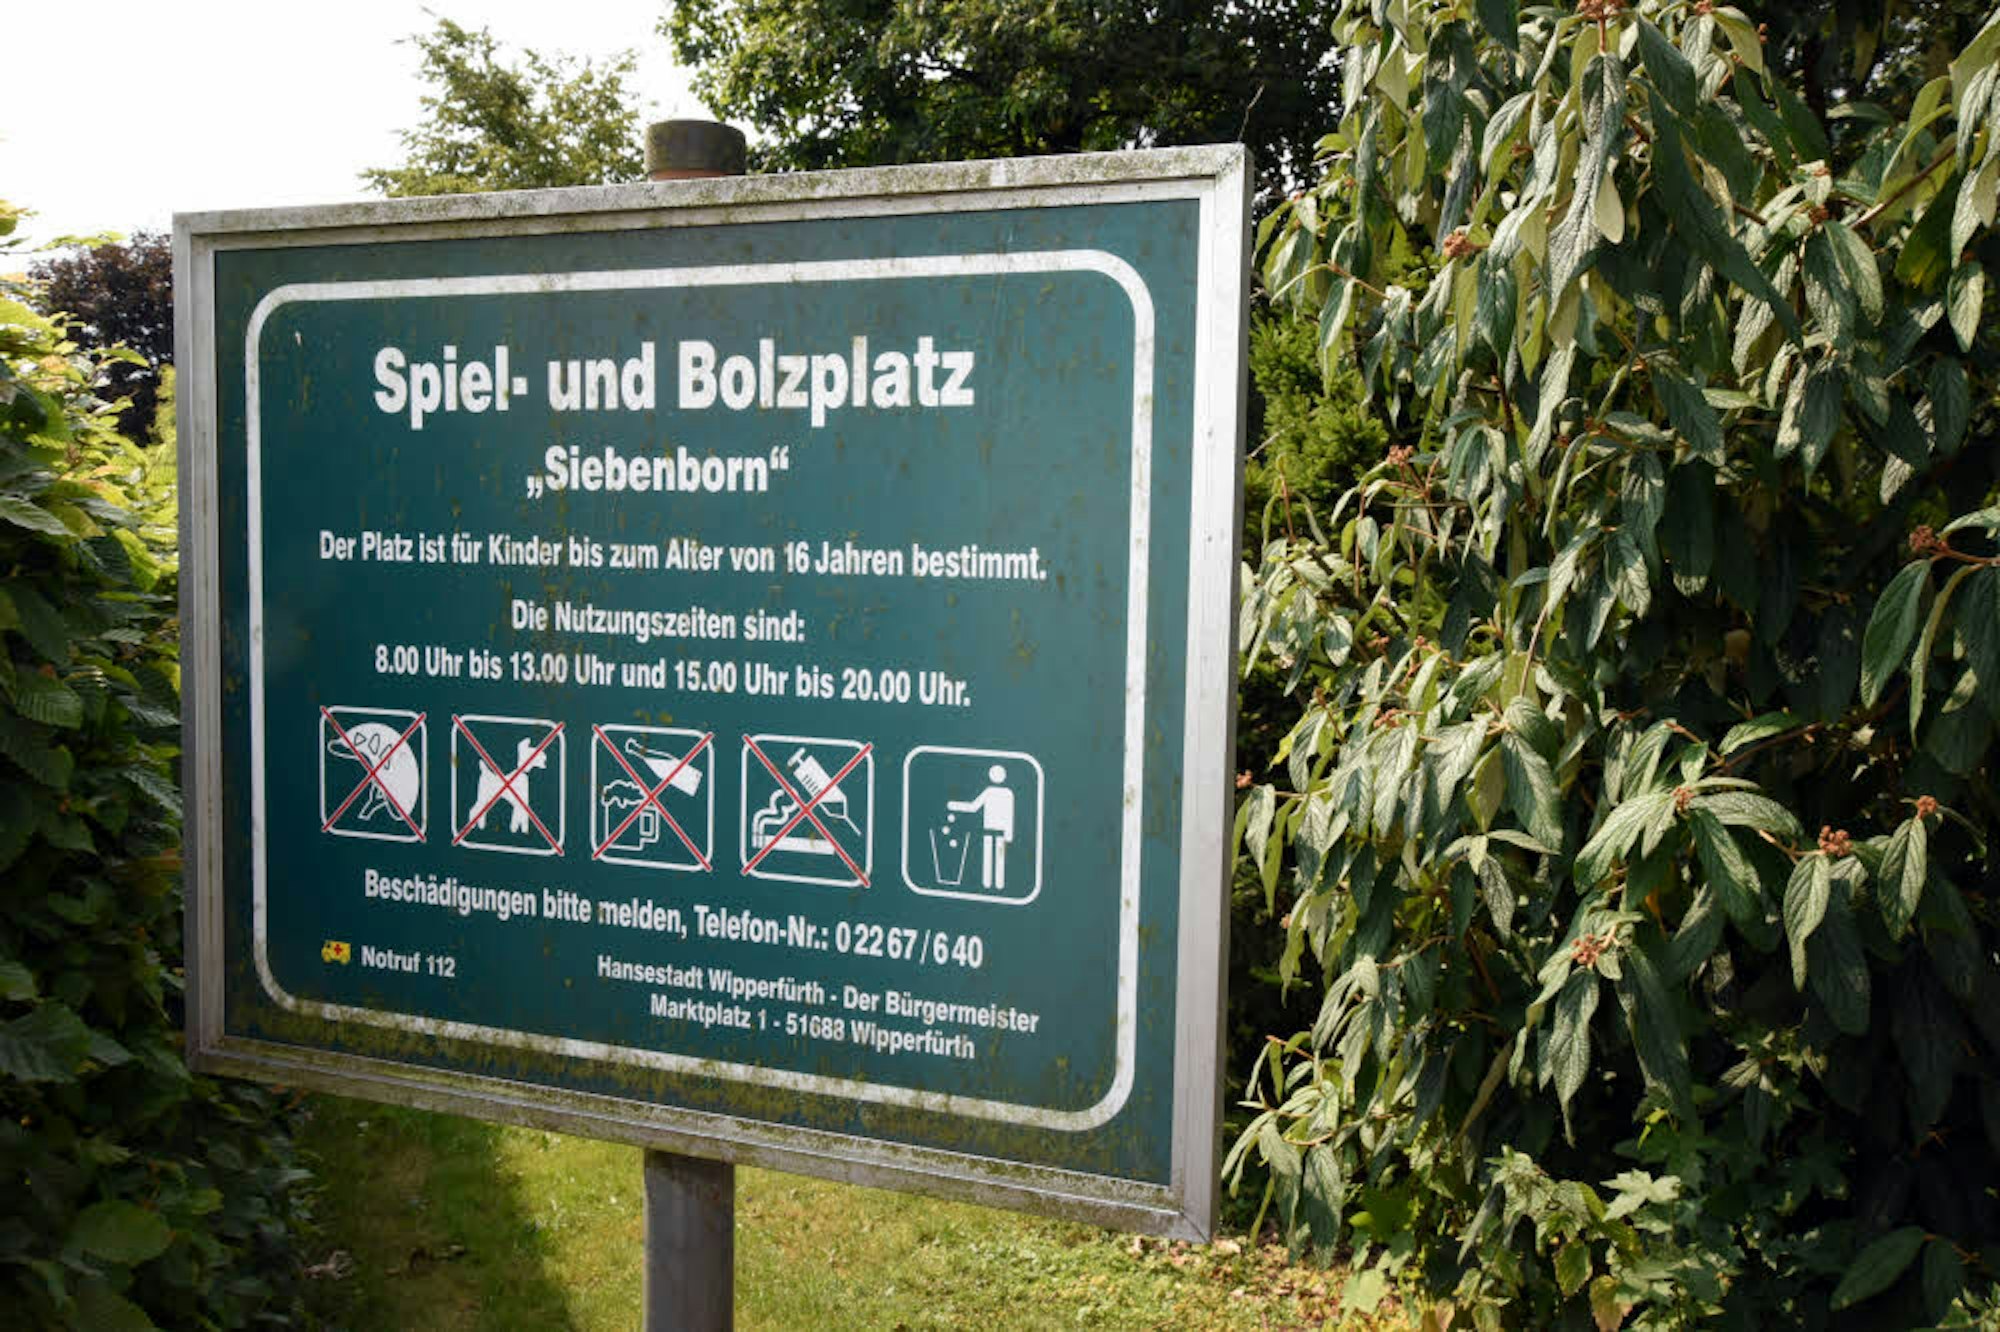 Für Kinder bis 16 Jahren ist der Spielplatz Siebenborn zugelassen.